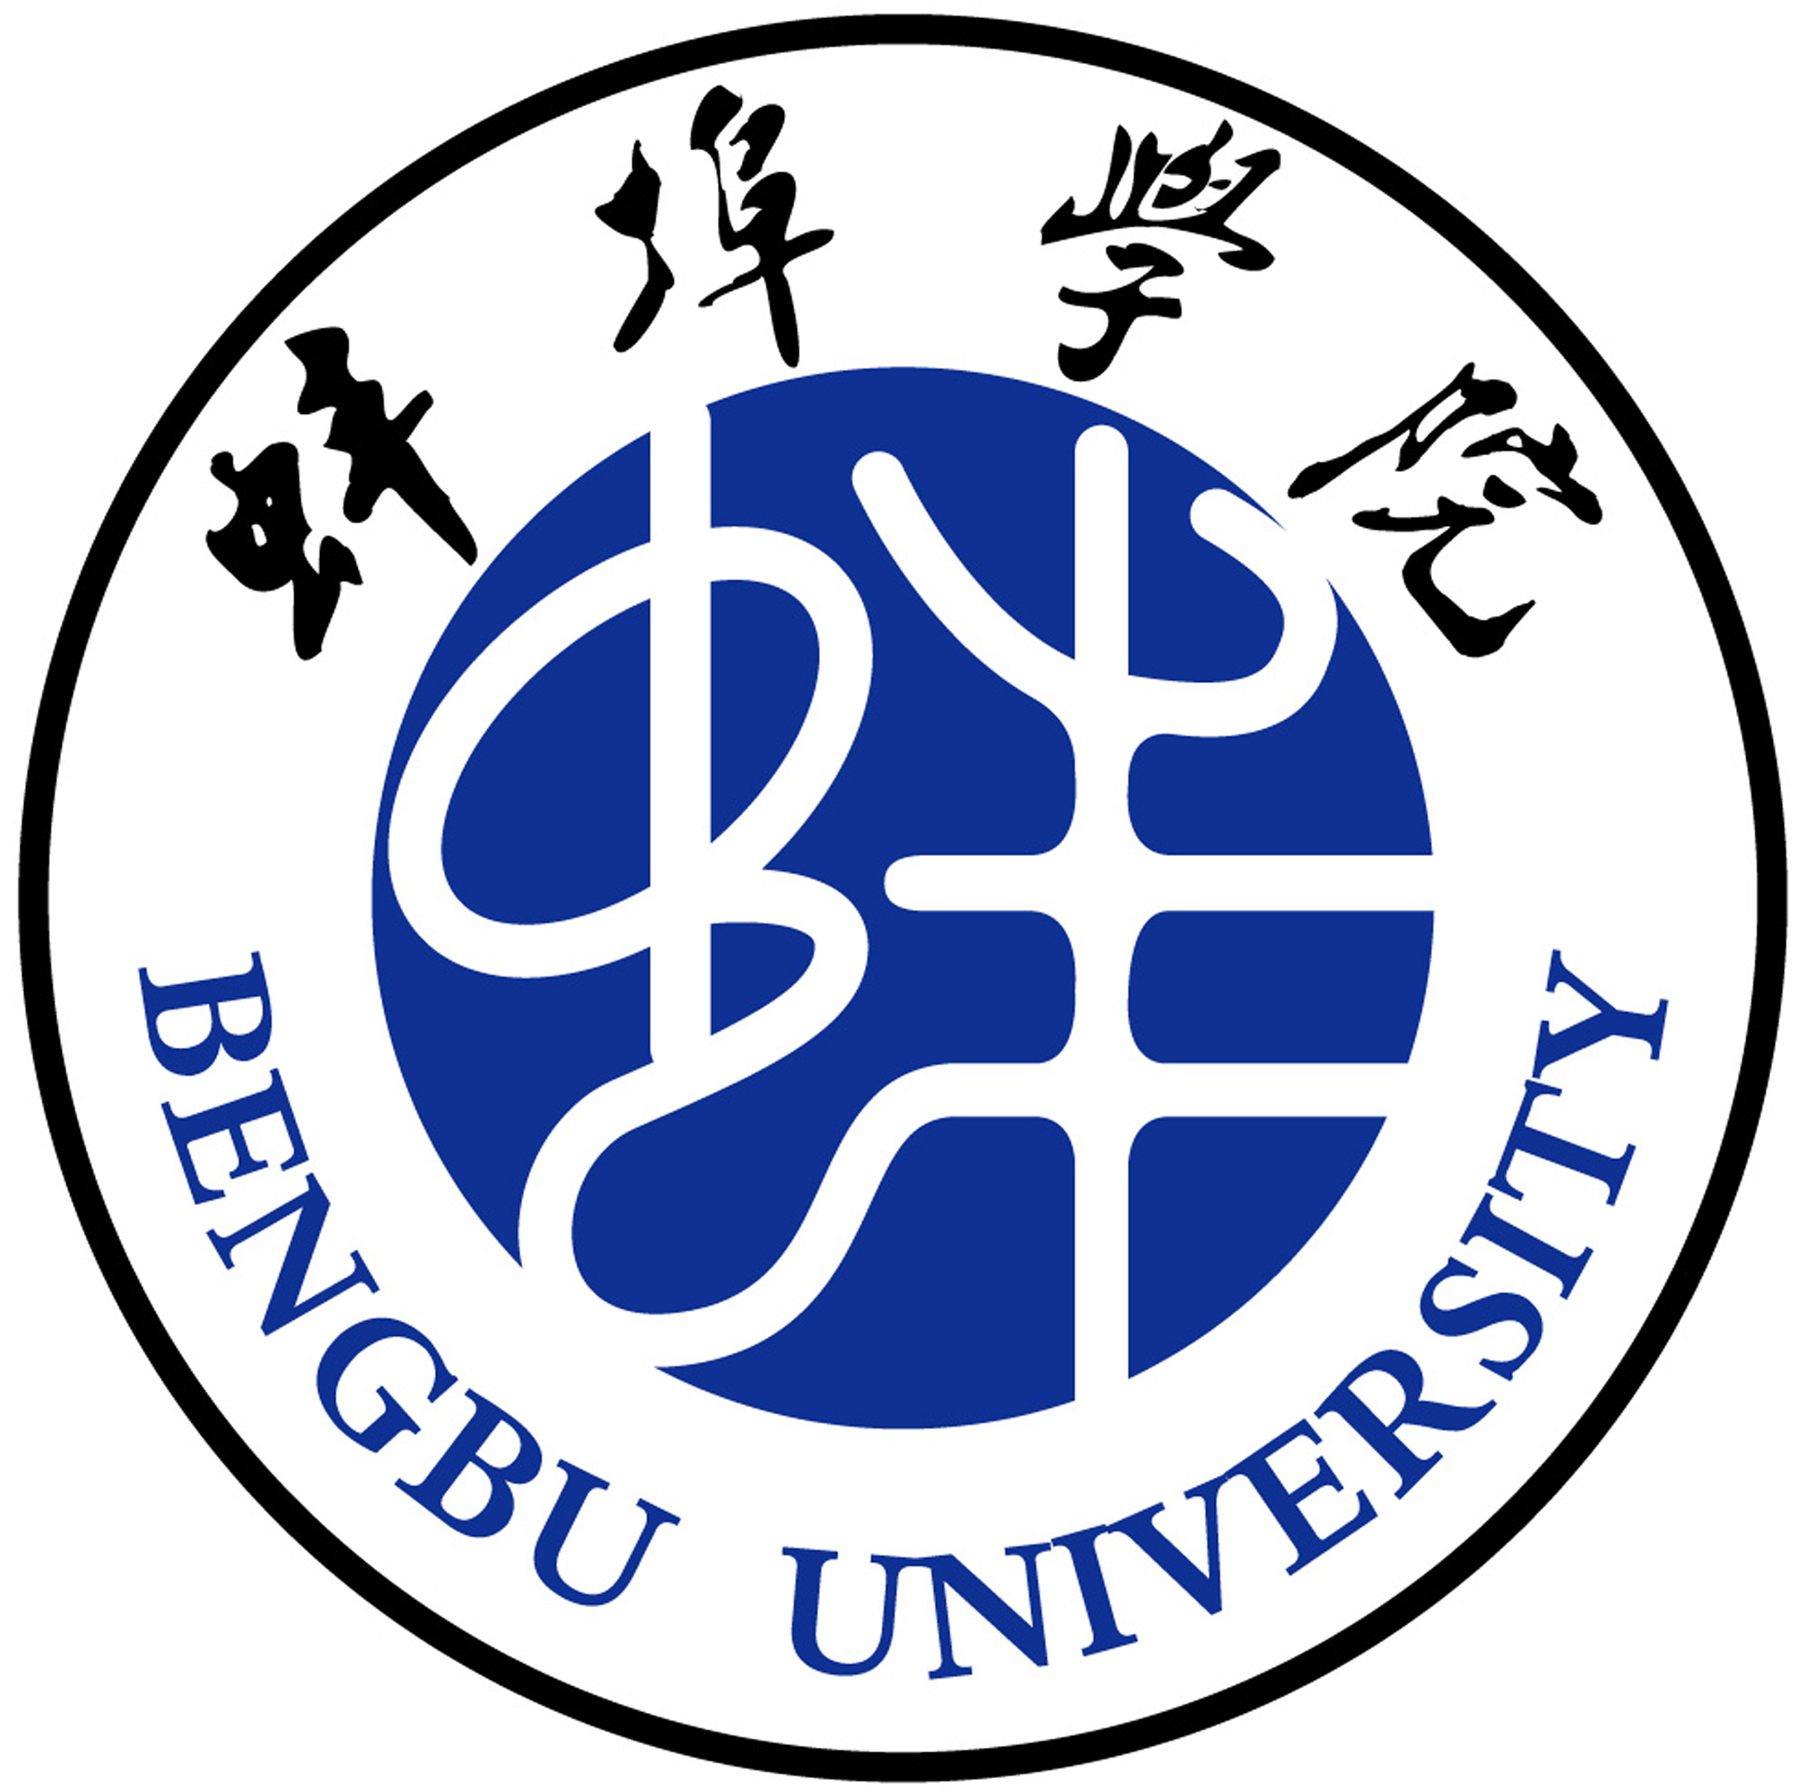 蚌埠铁路中学logo图片